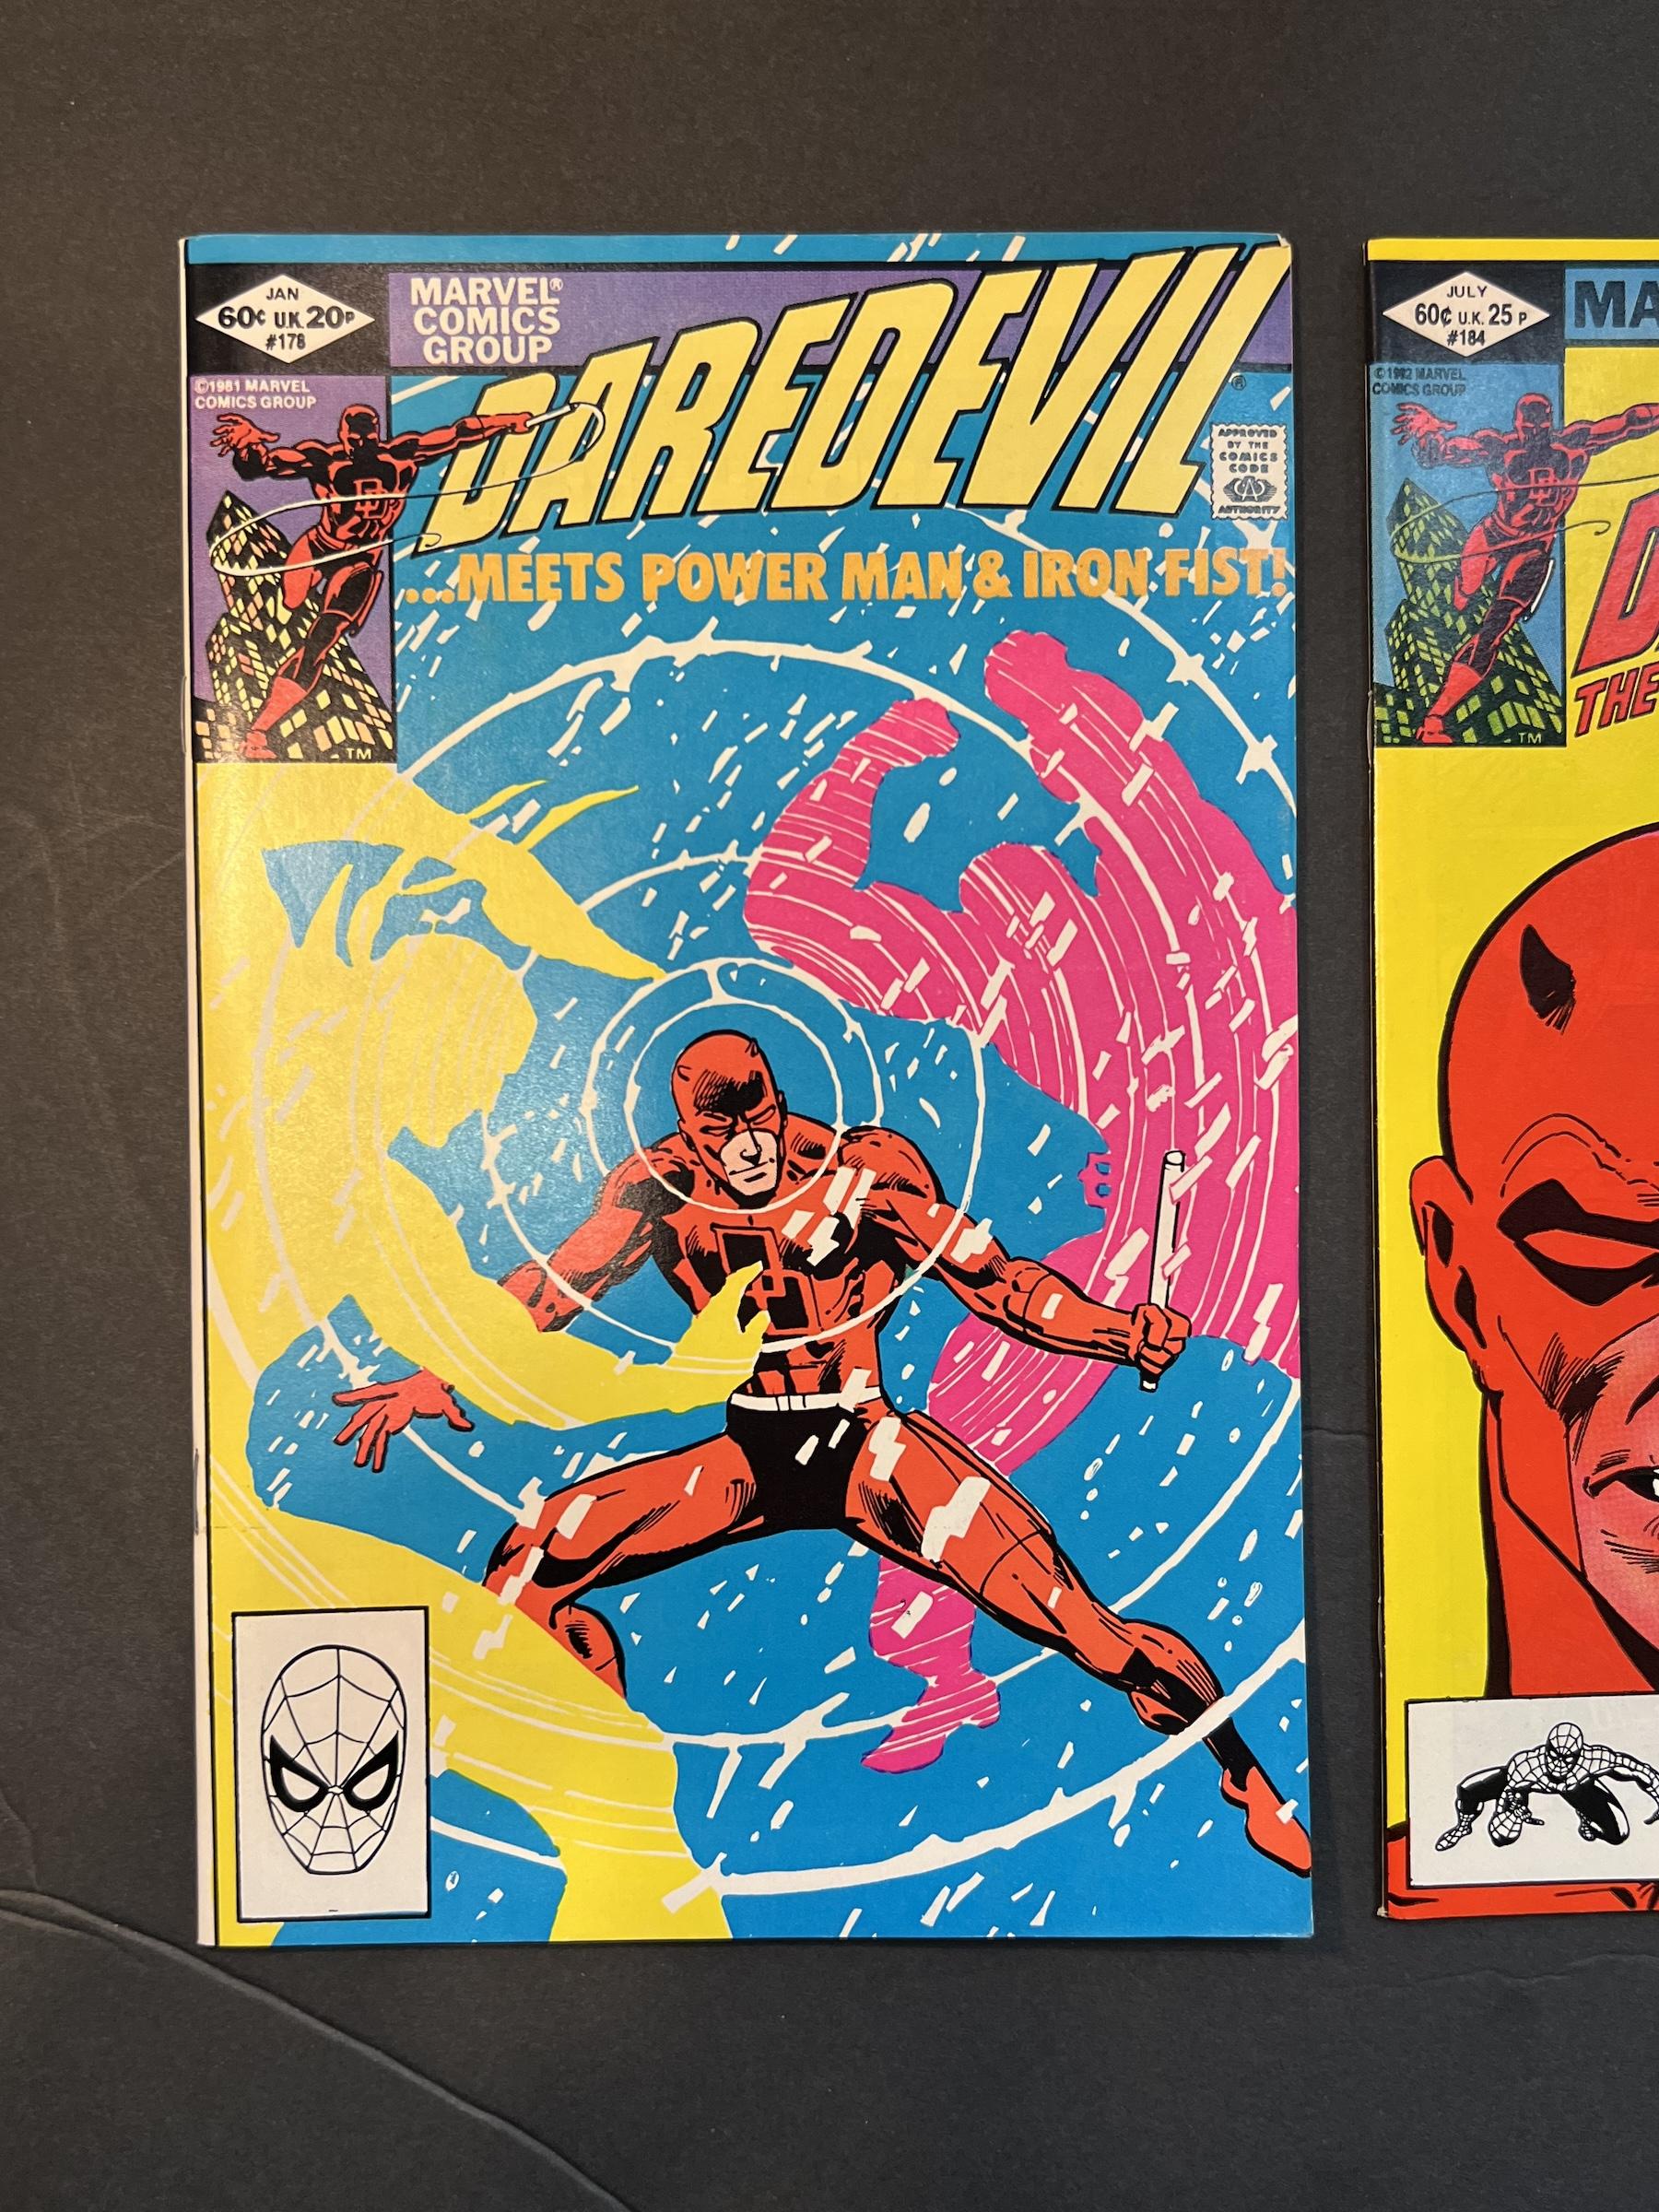 Daredevil #178 & #184 Marvel Comic Books